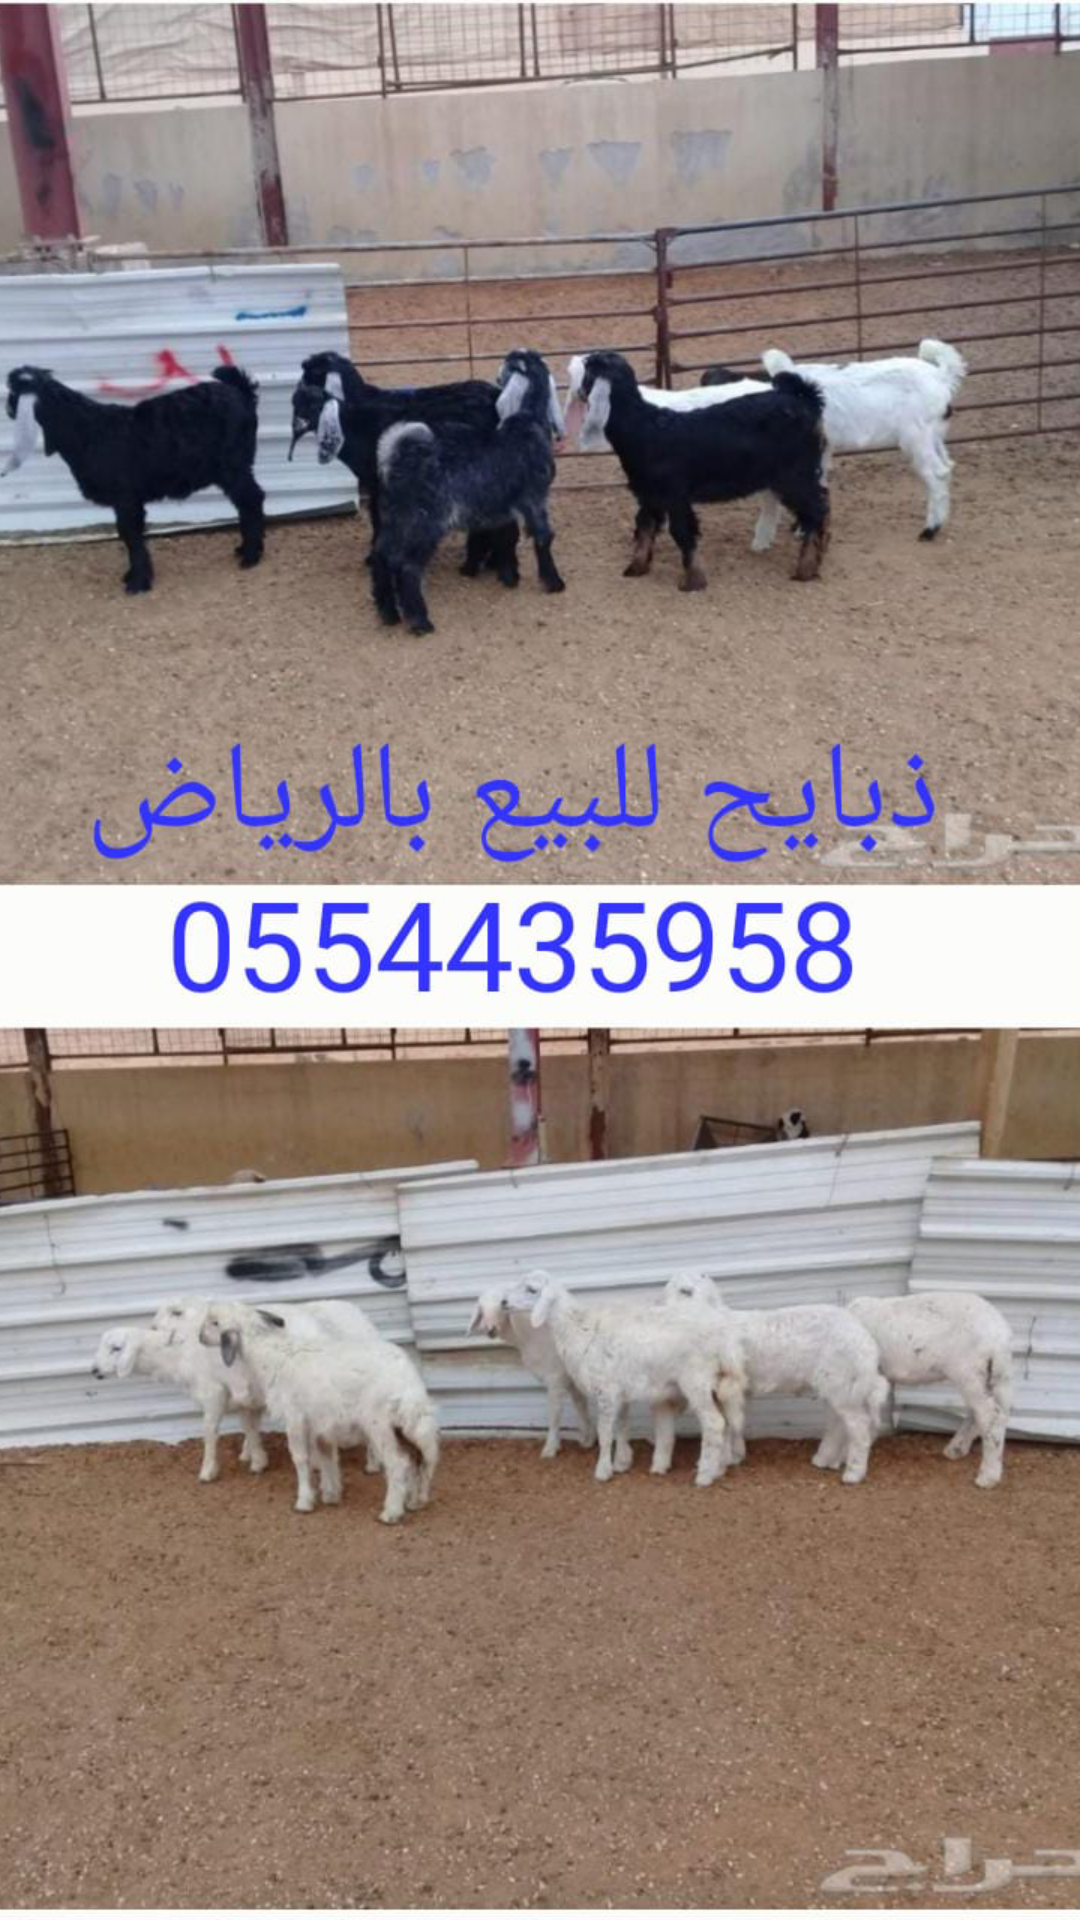 ذبايح حري للبيع بالرياض 0554435958 ذبائح للبيع في الرياض P_121204hte0